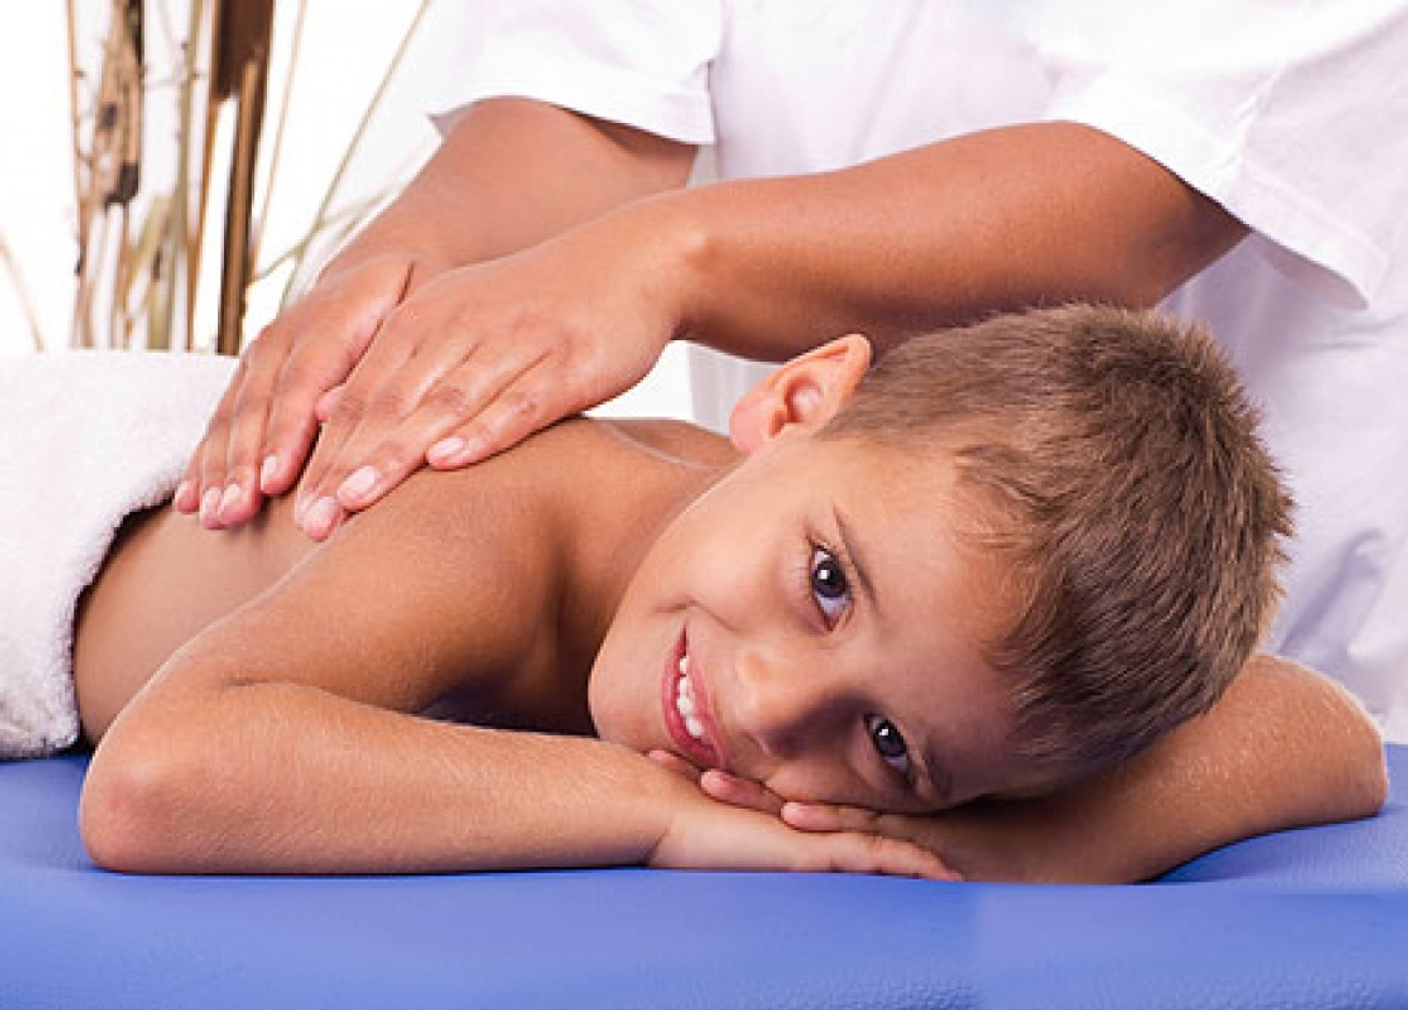 Детский массаж